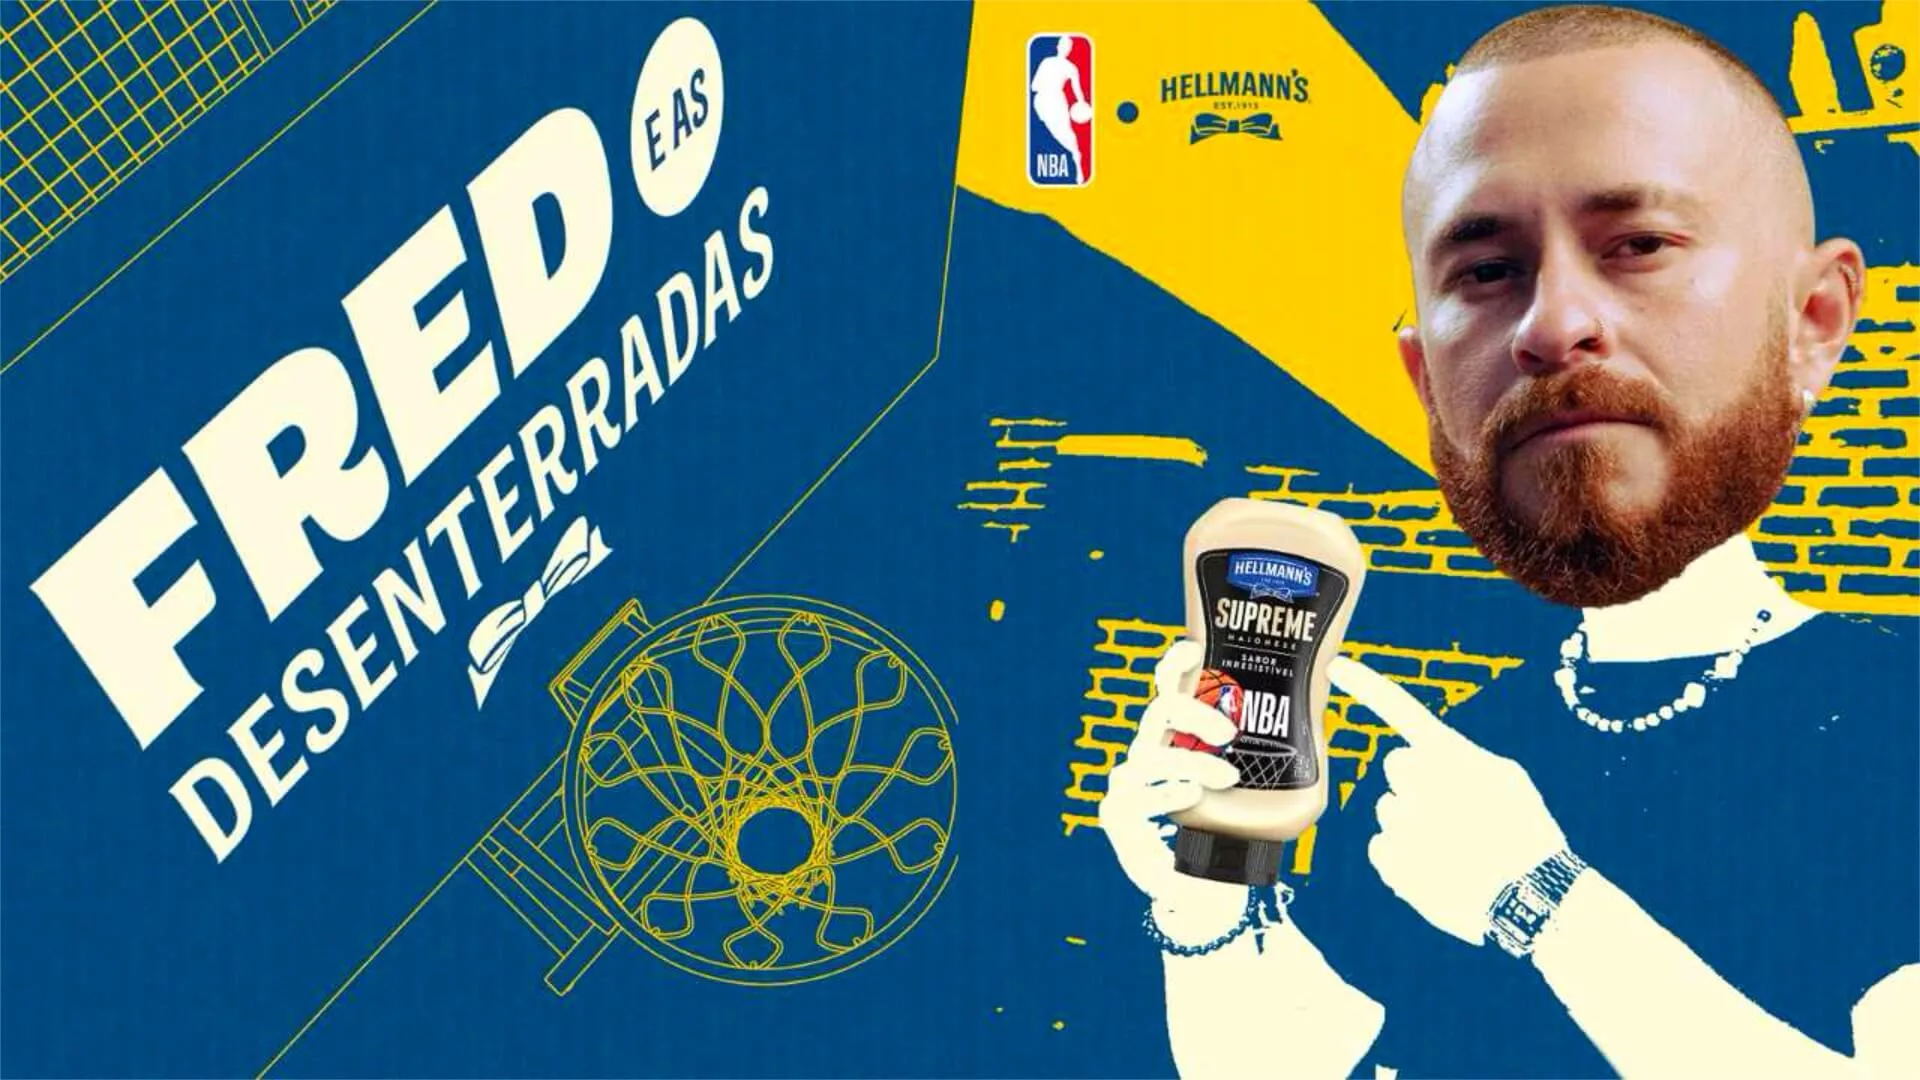 Hellmann’s e NBA “viajam na maionese” com Fred